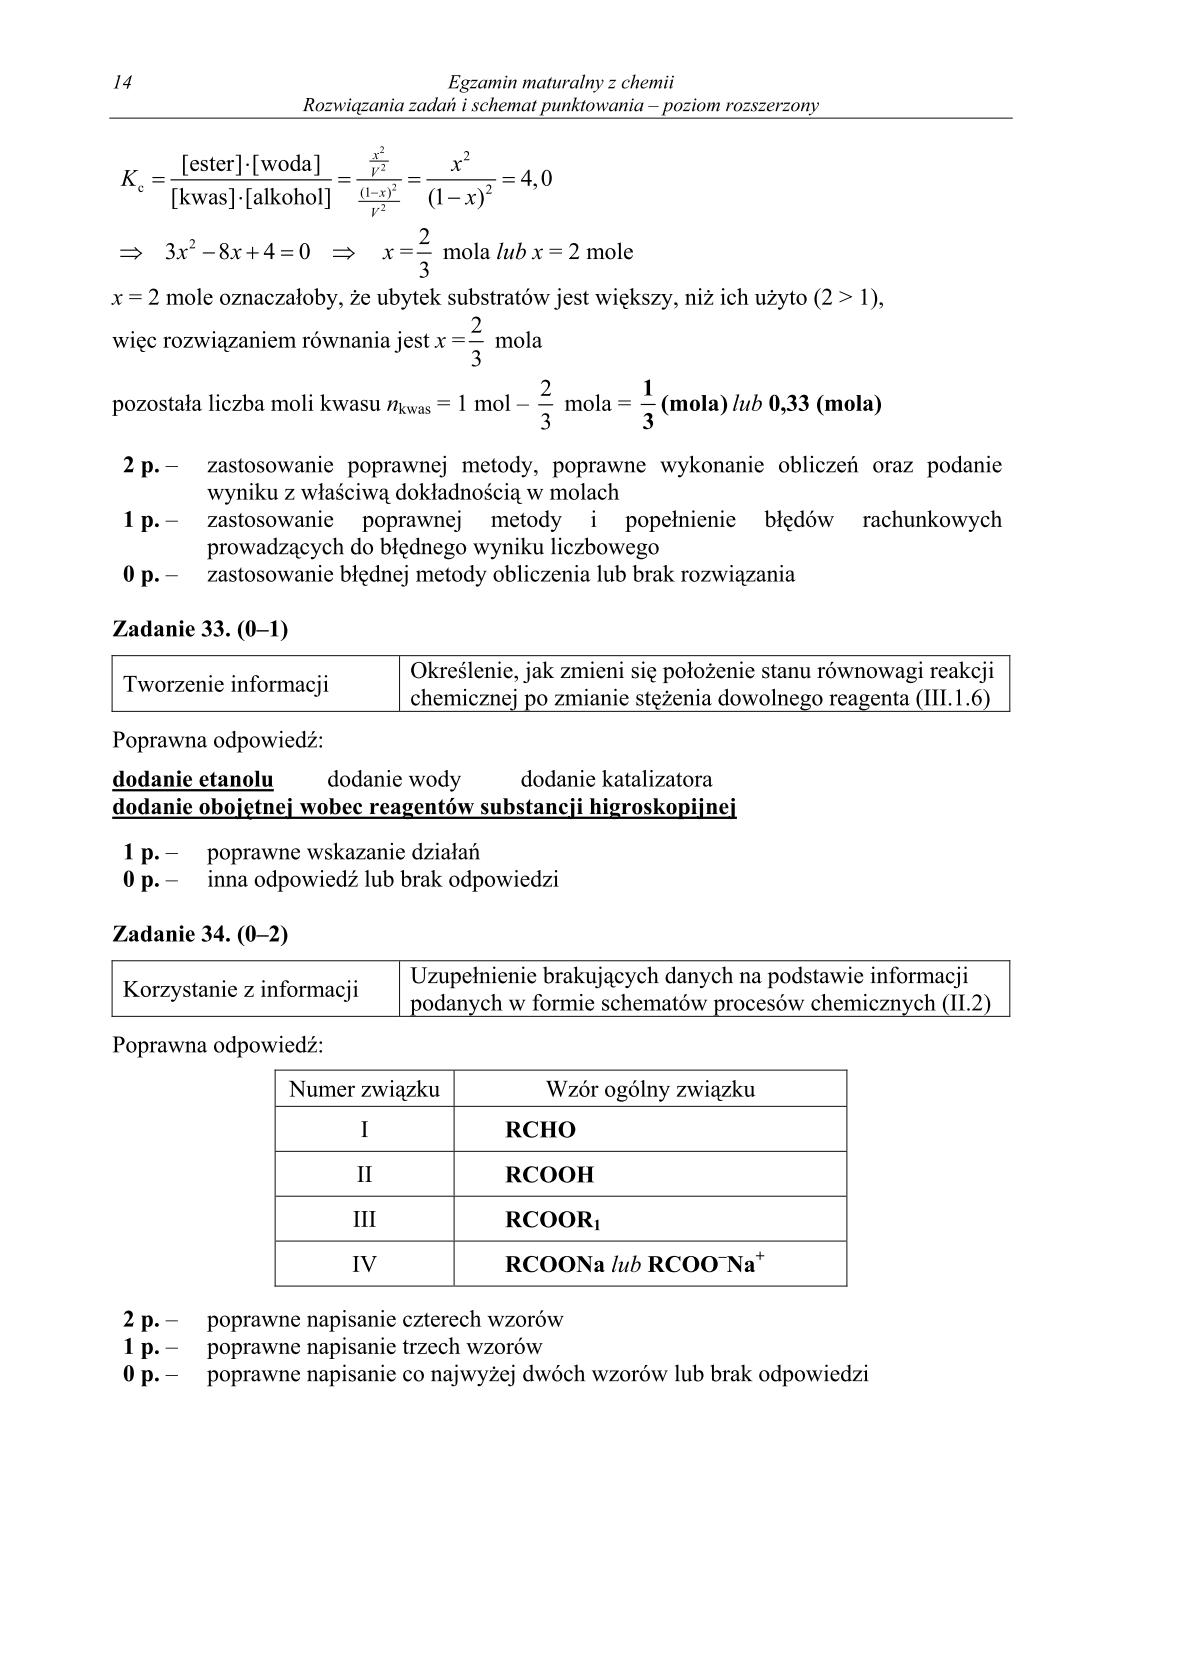 odpowiedzi-chemia-poziom-rozszerzony-matura-2014-str.14